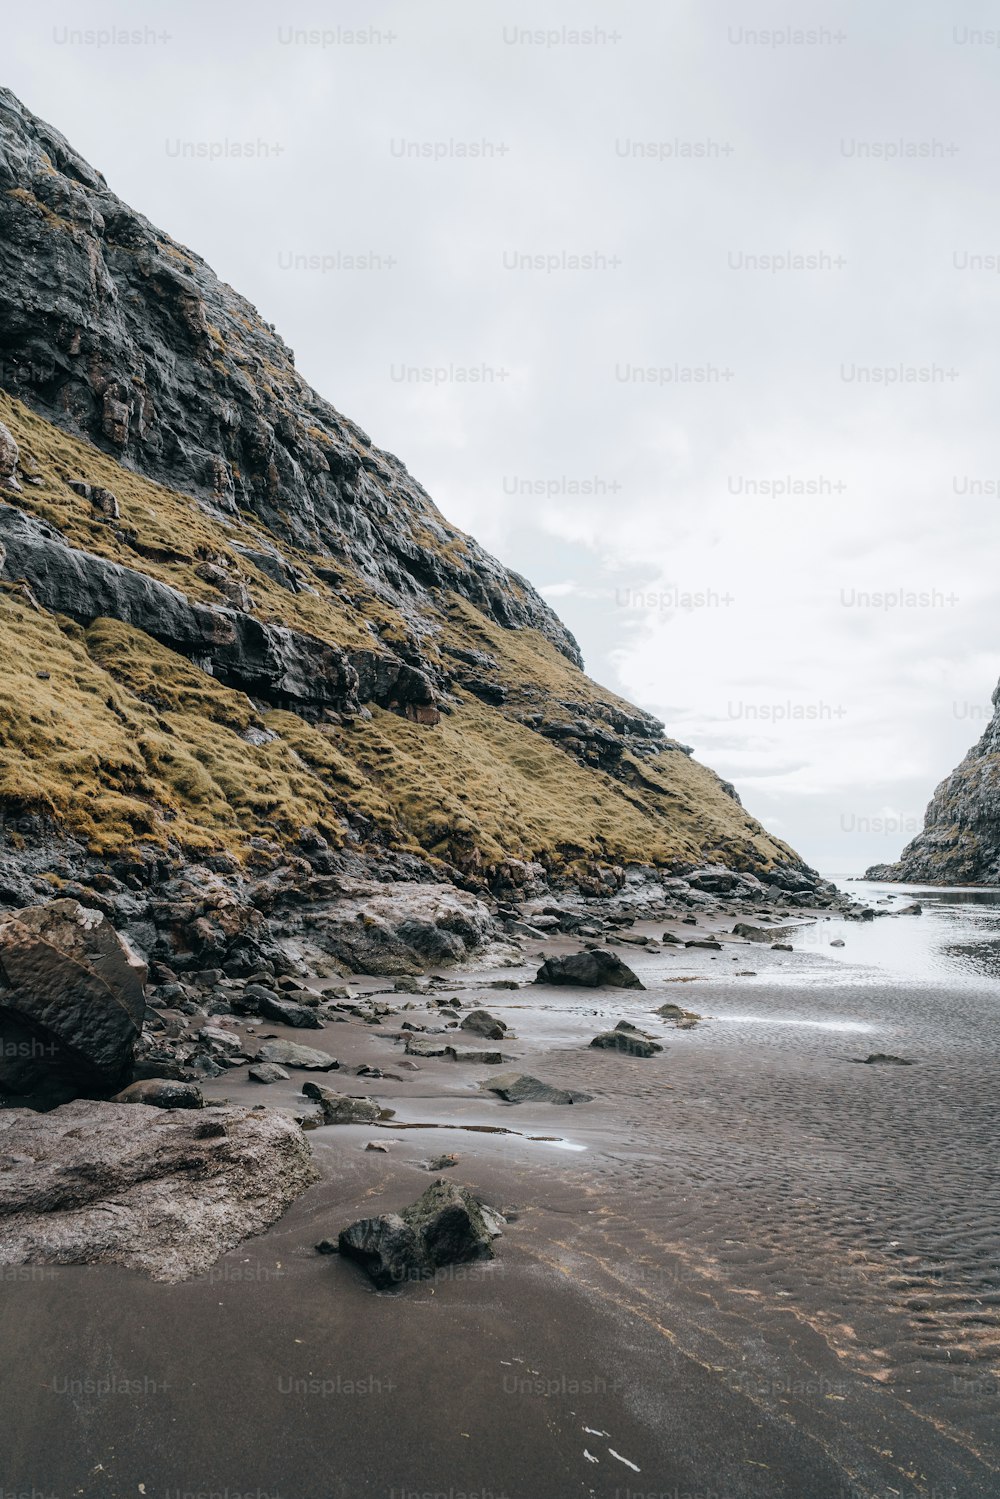 Una playa de arena junto a un acantilado rocoso